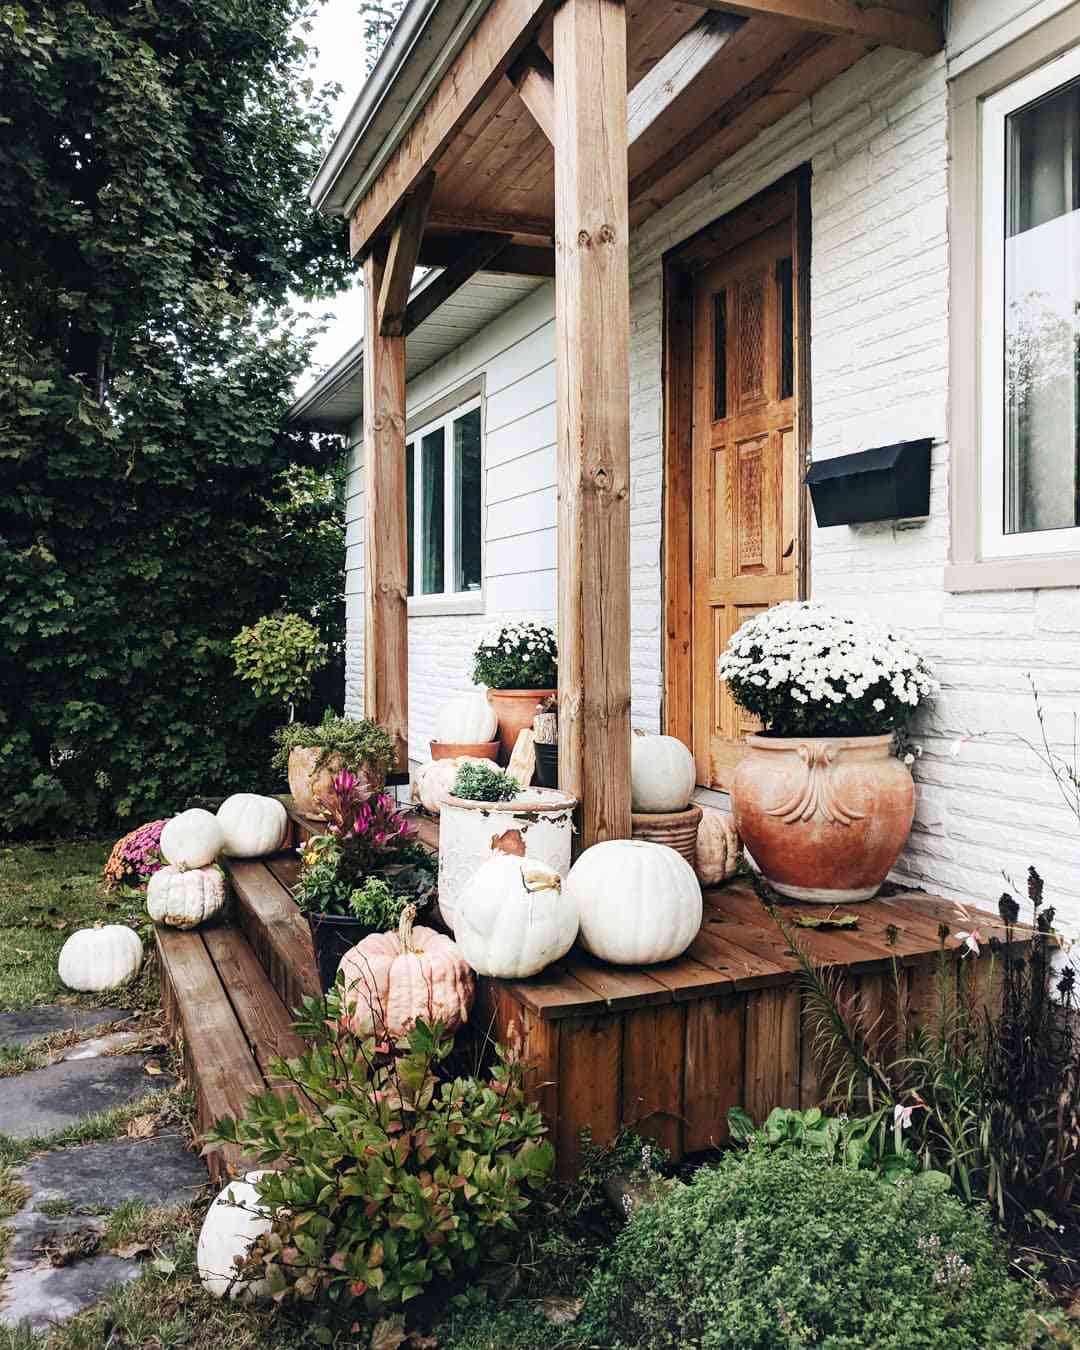 Casa de fazenda branca com varanda de madeira e decoração de outono nos degraus da frente